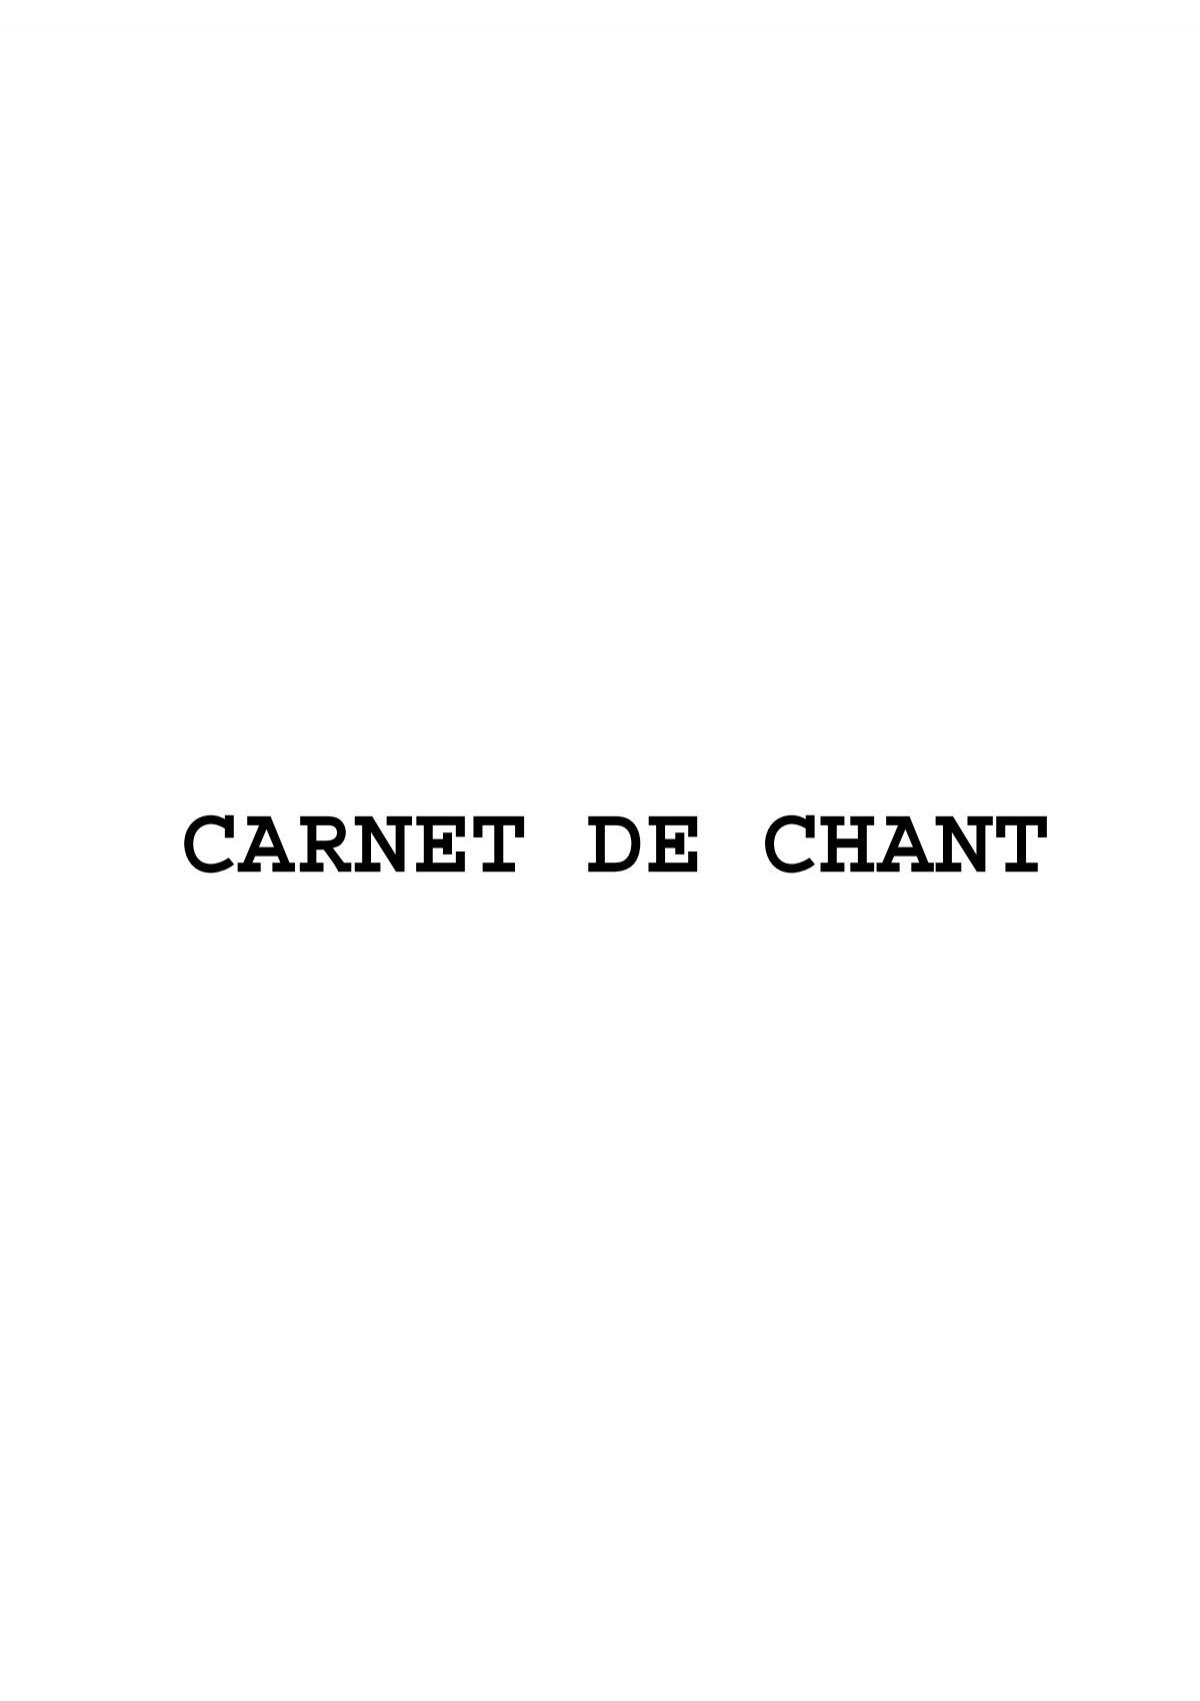 CARNET DE CHANT - Archive-Host